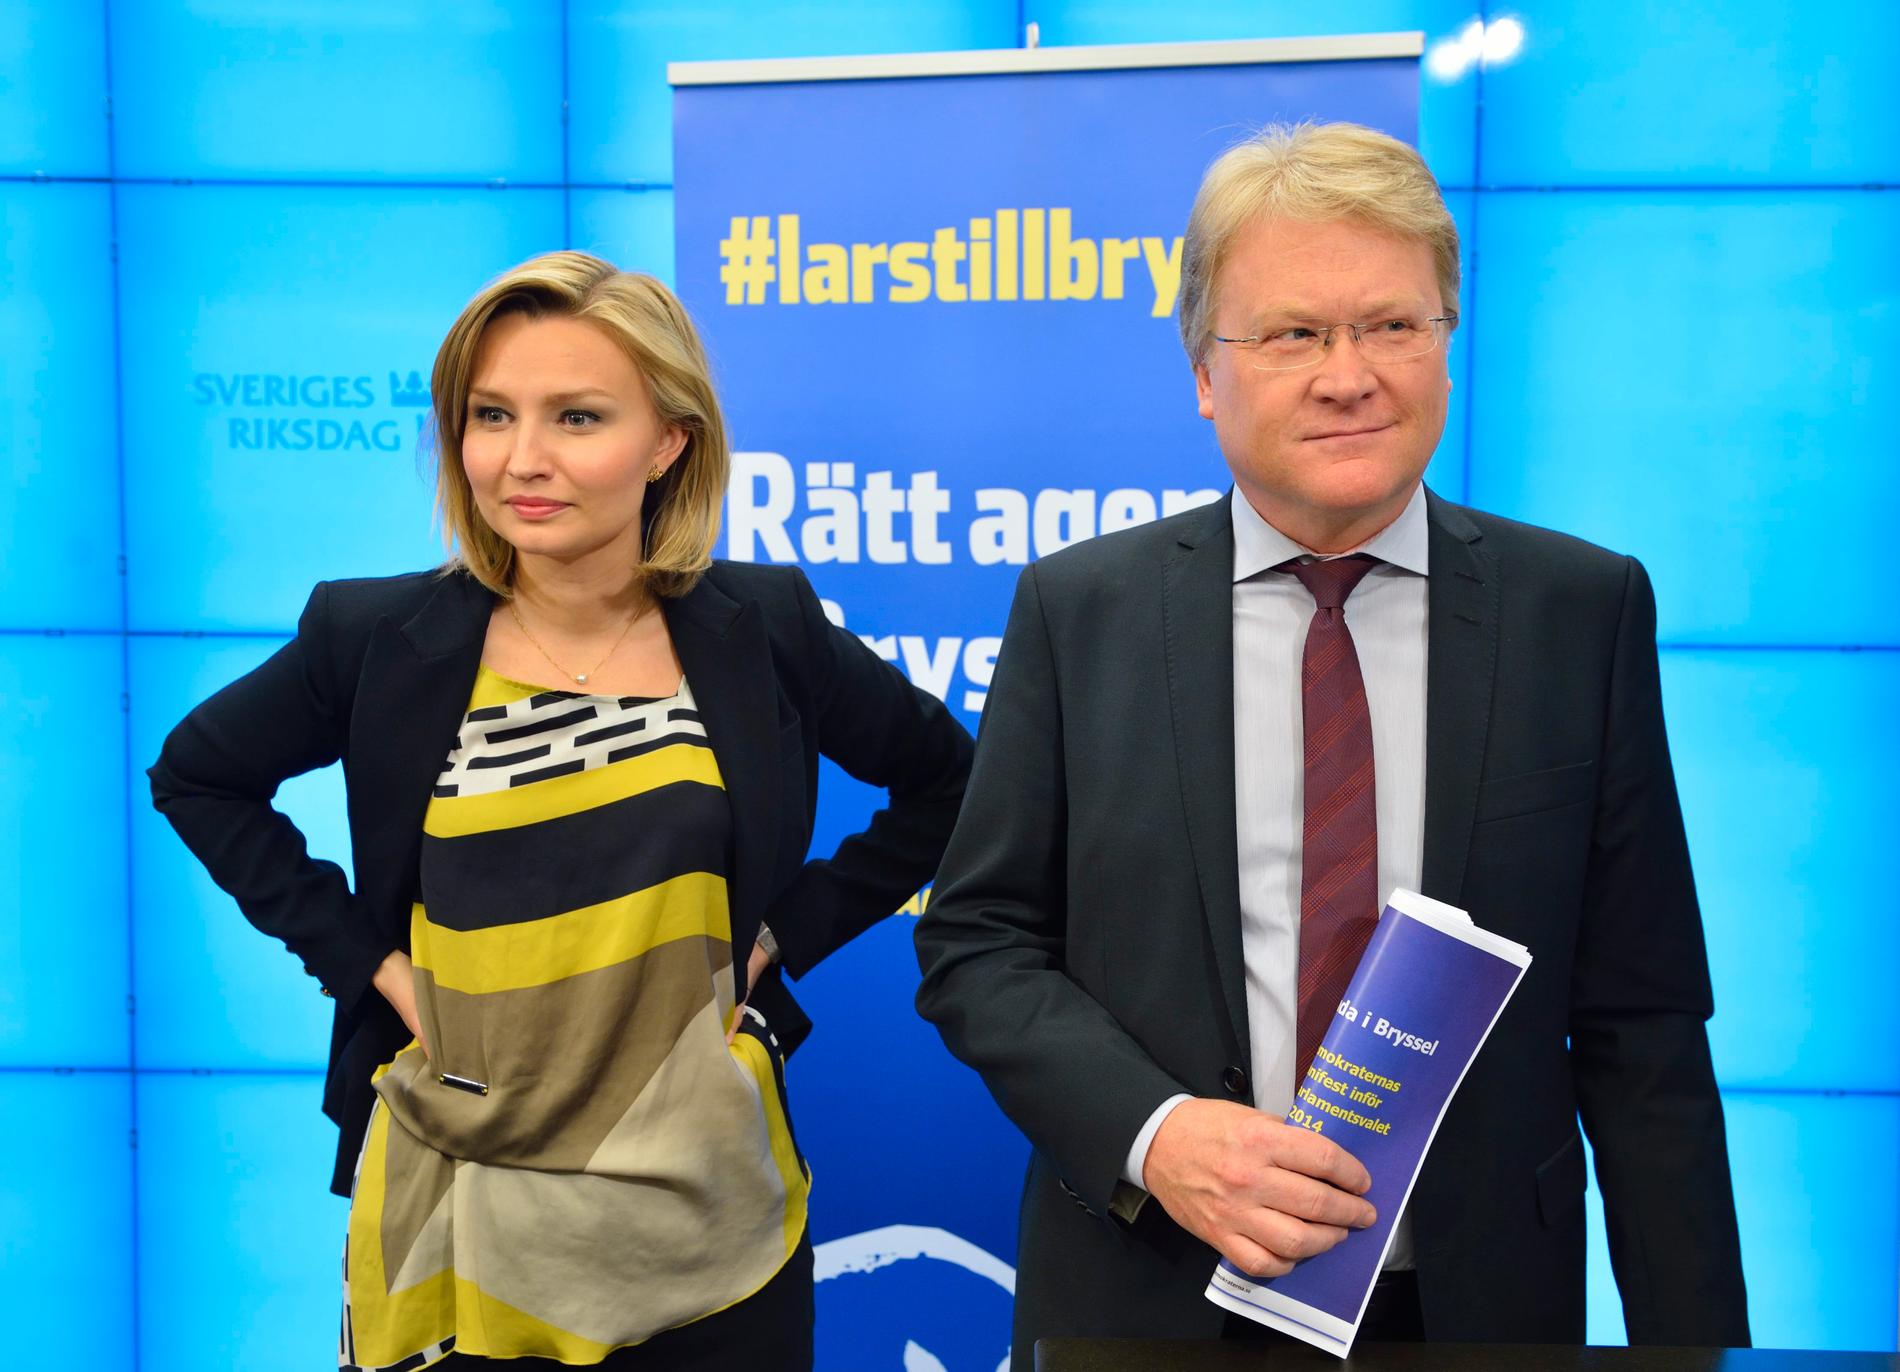 Så här såg Ebba Busch Thor och Lars Adaktusson ut på vårkanten 2014, inför EU-parlamentsvalet. Arkivbild.